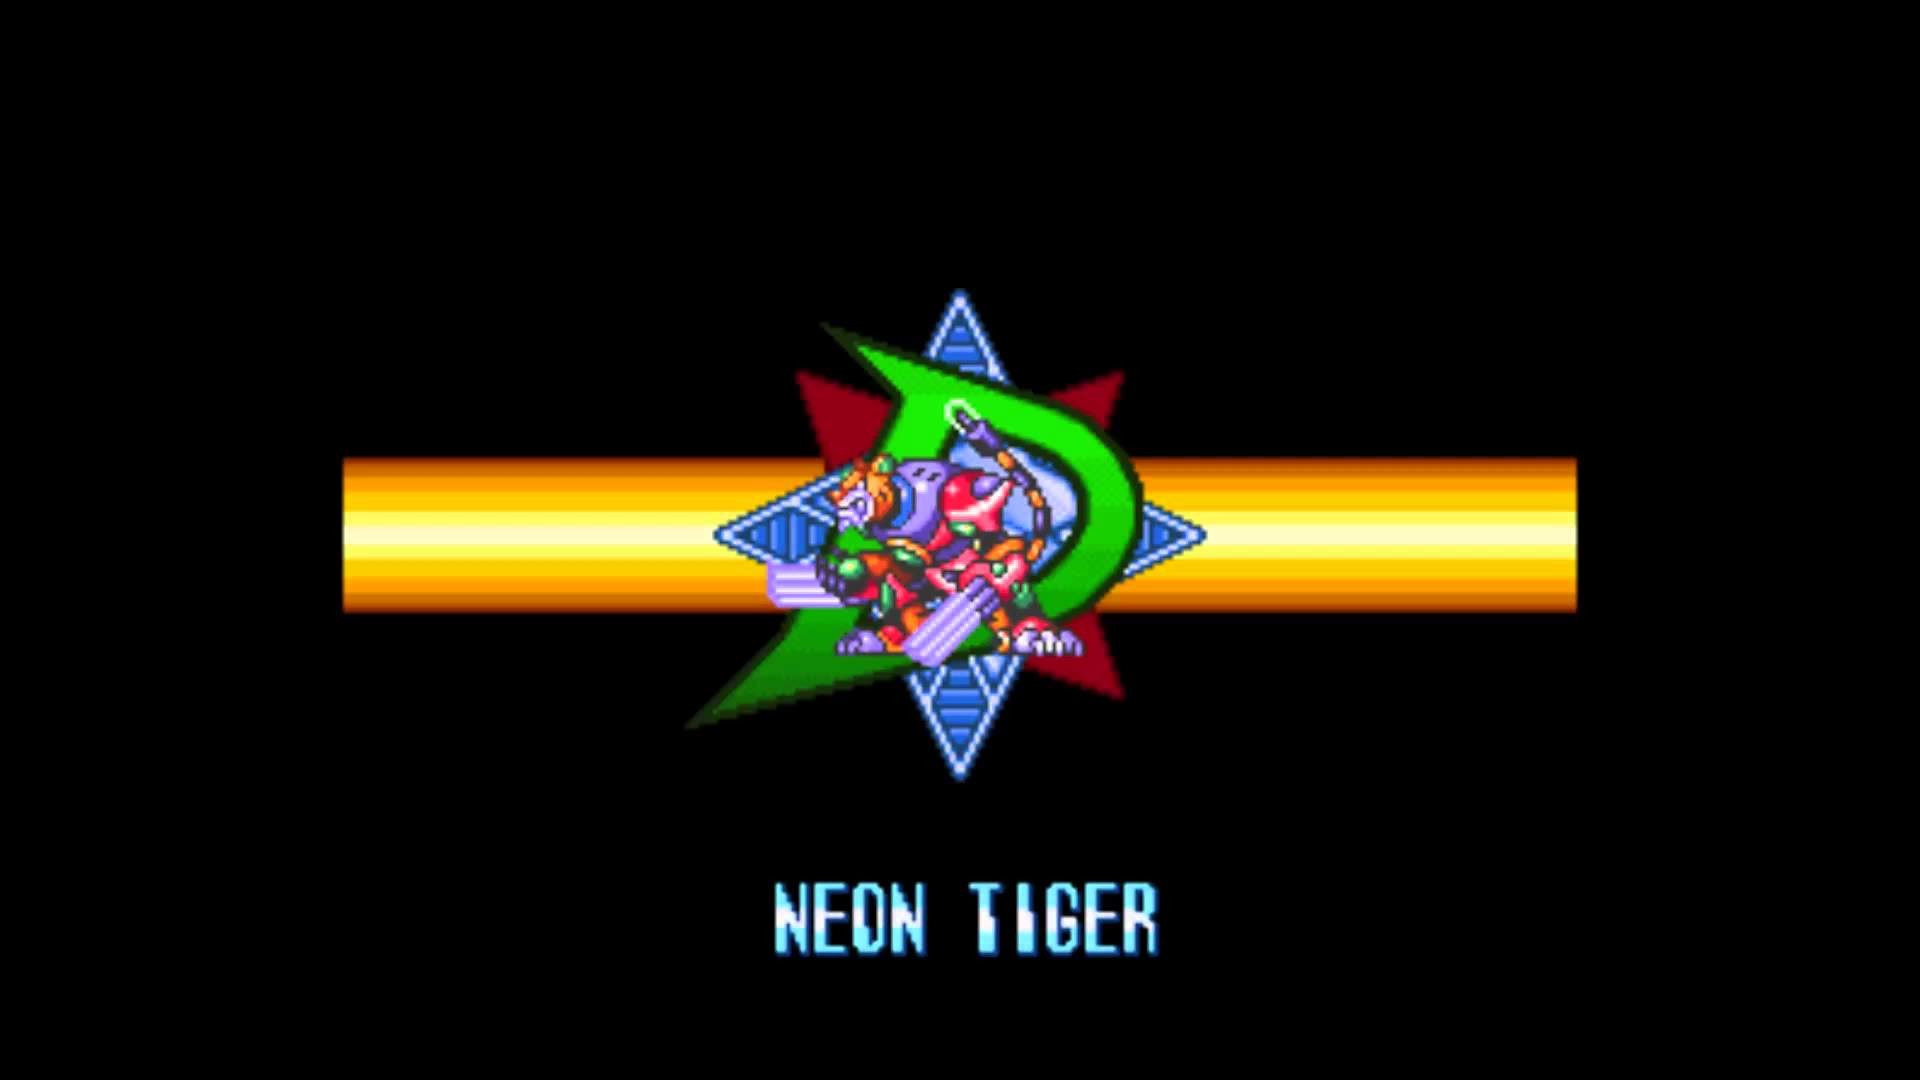 Mega Man X3 – Neon Tiger (Famitracker 2A03 arrangement)